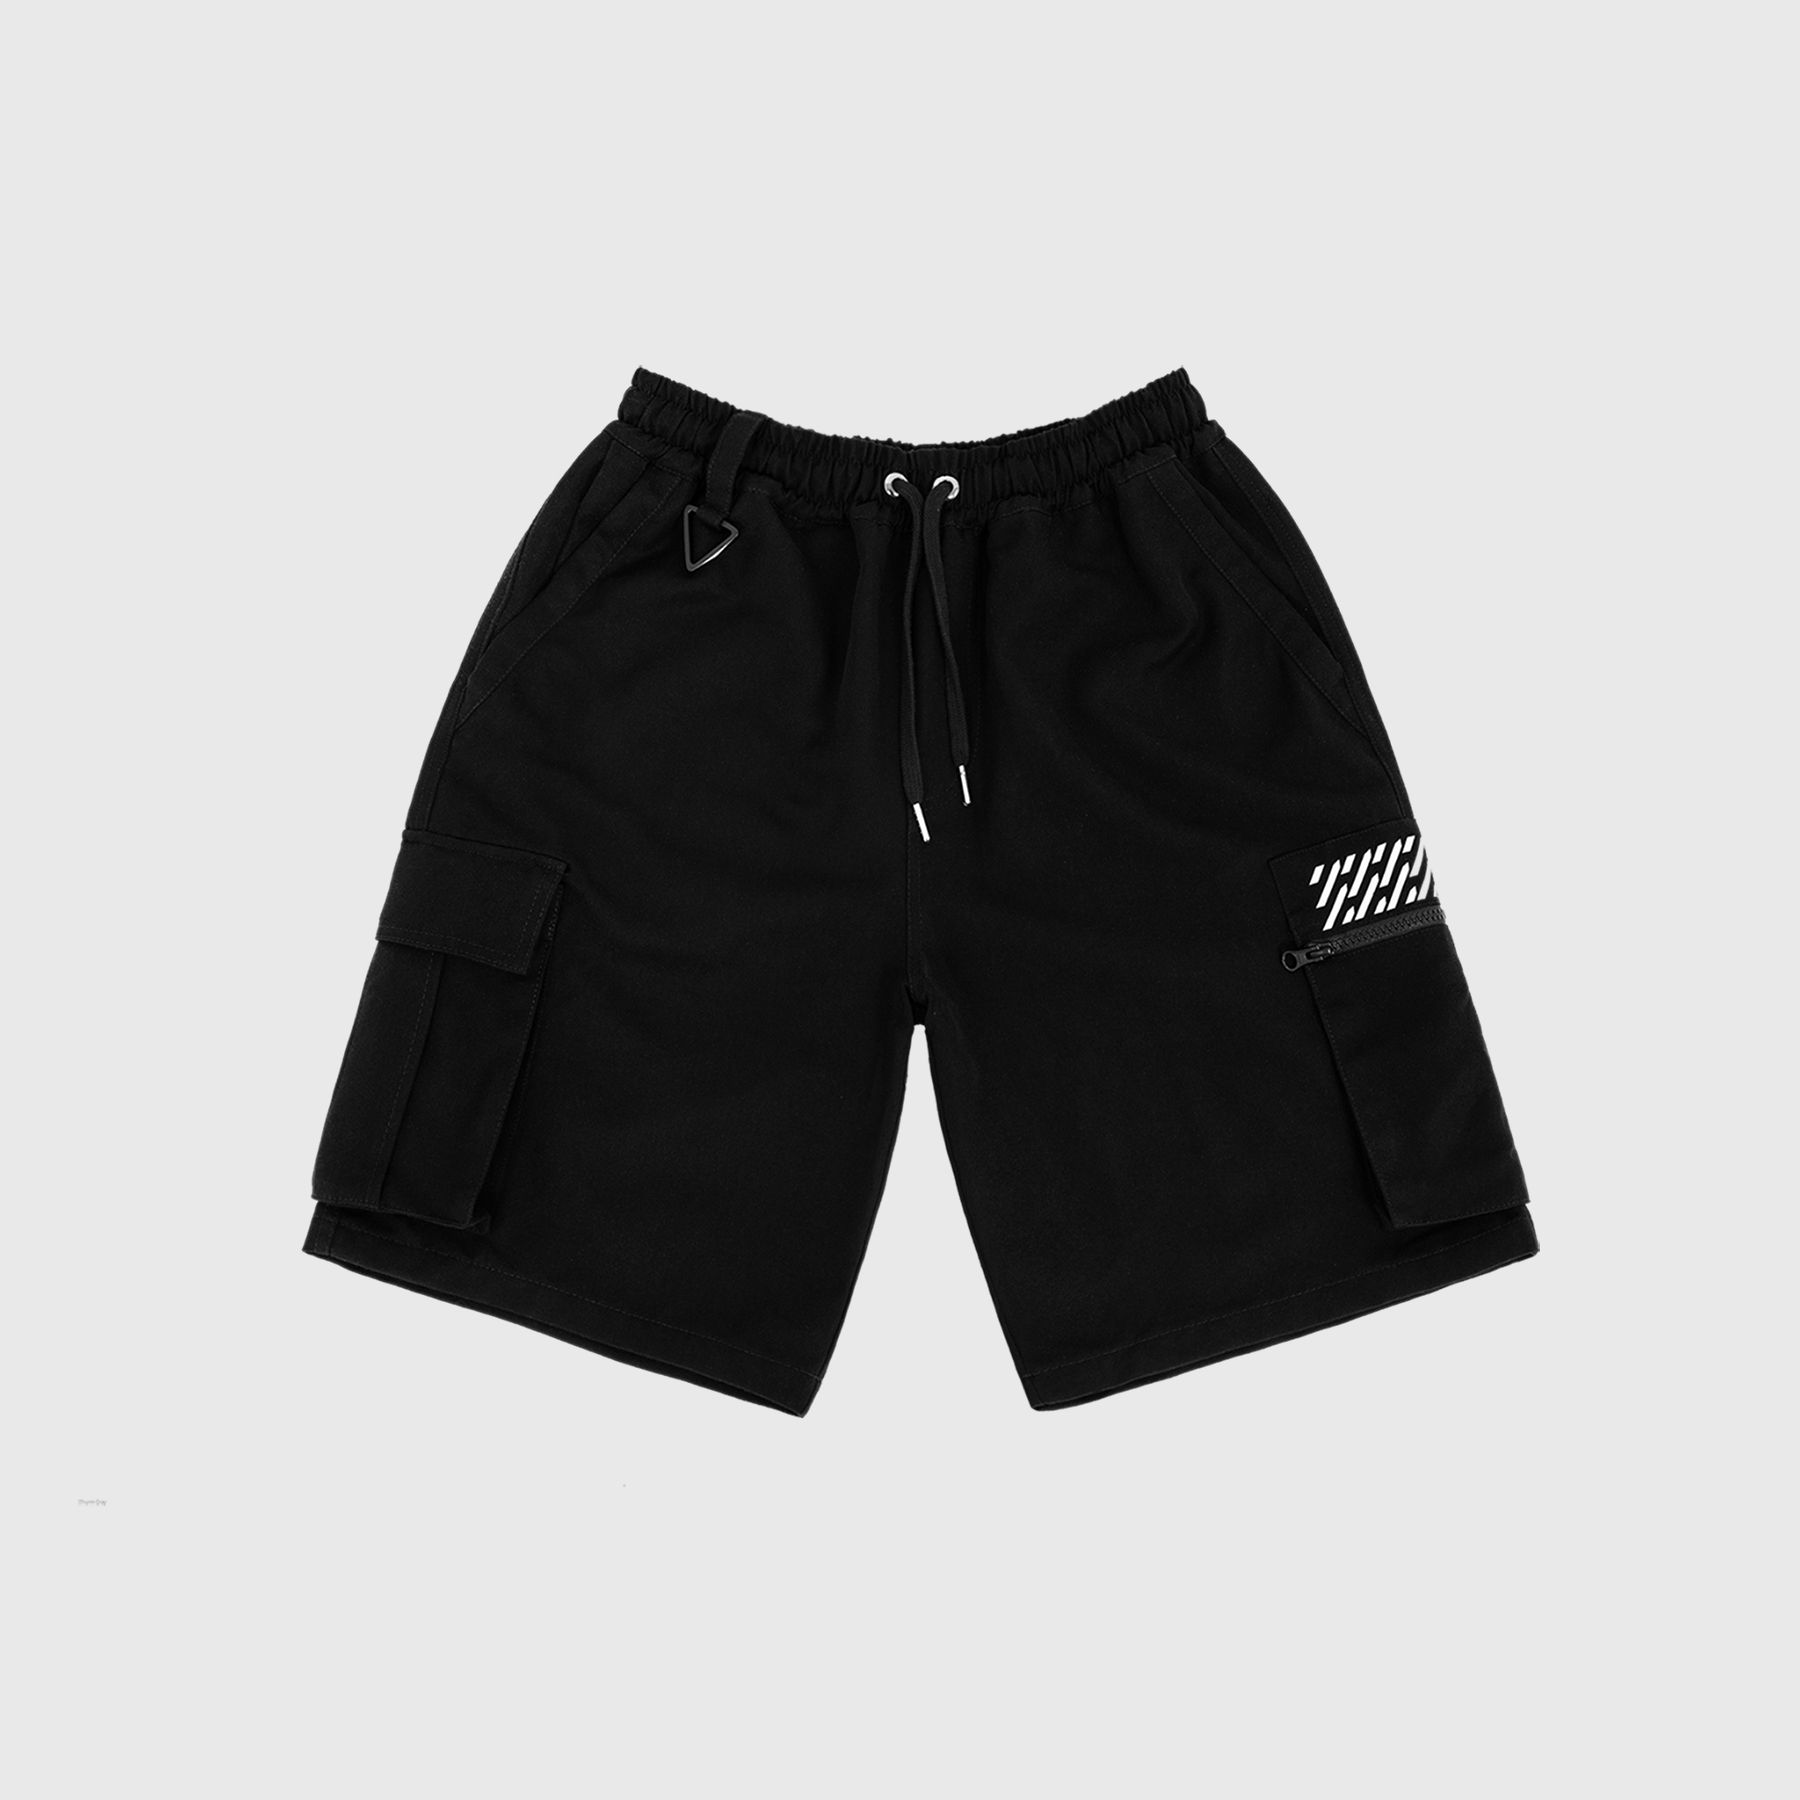 Cordless primitive UJ shorts - Quần shorts UJ không dây